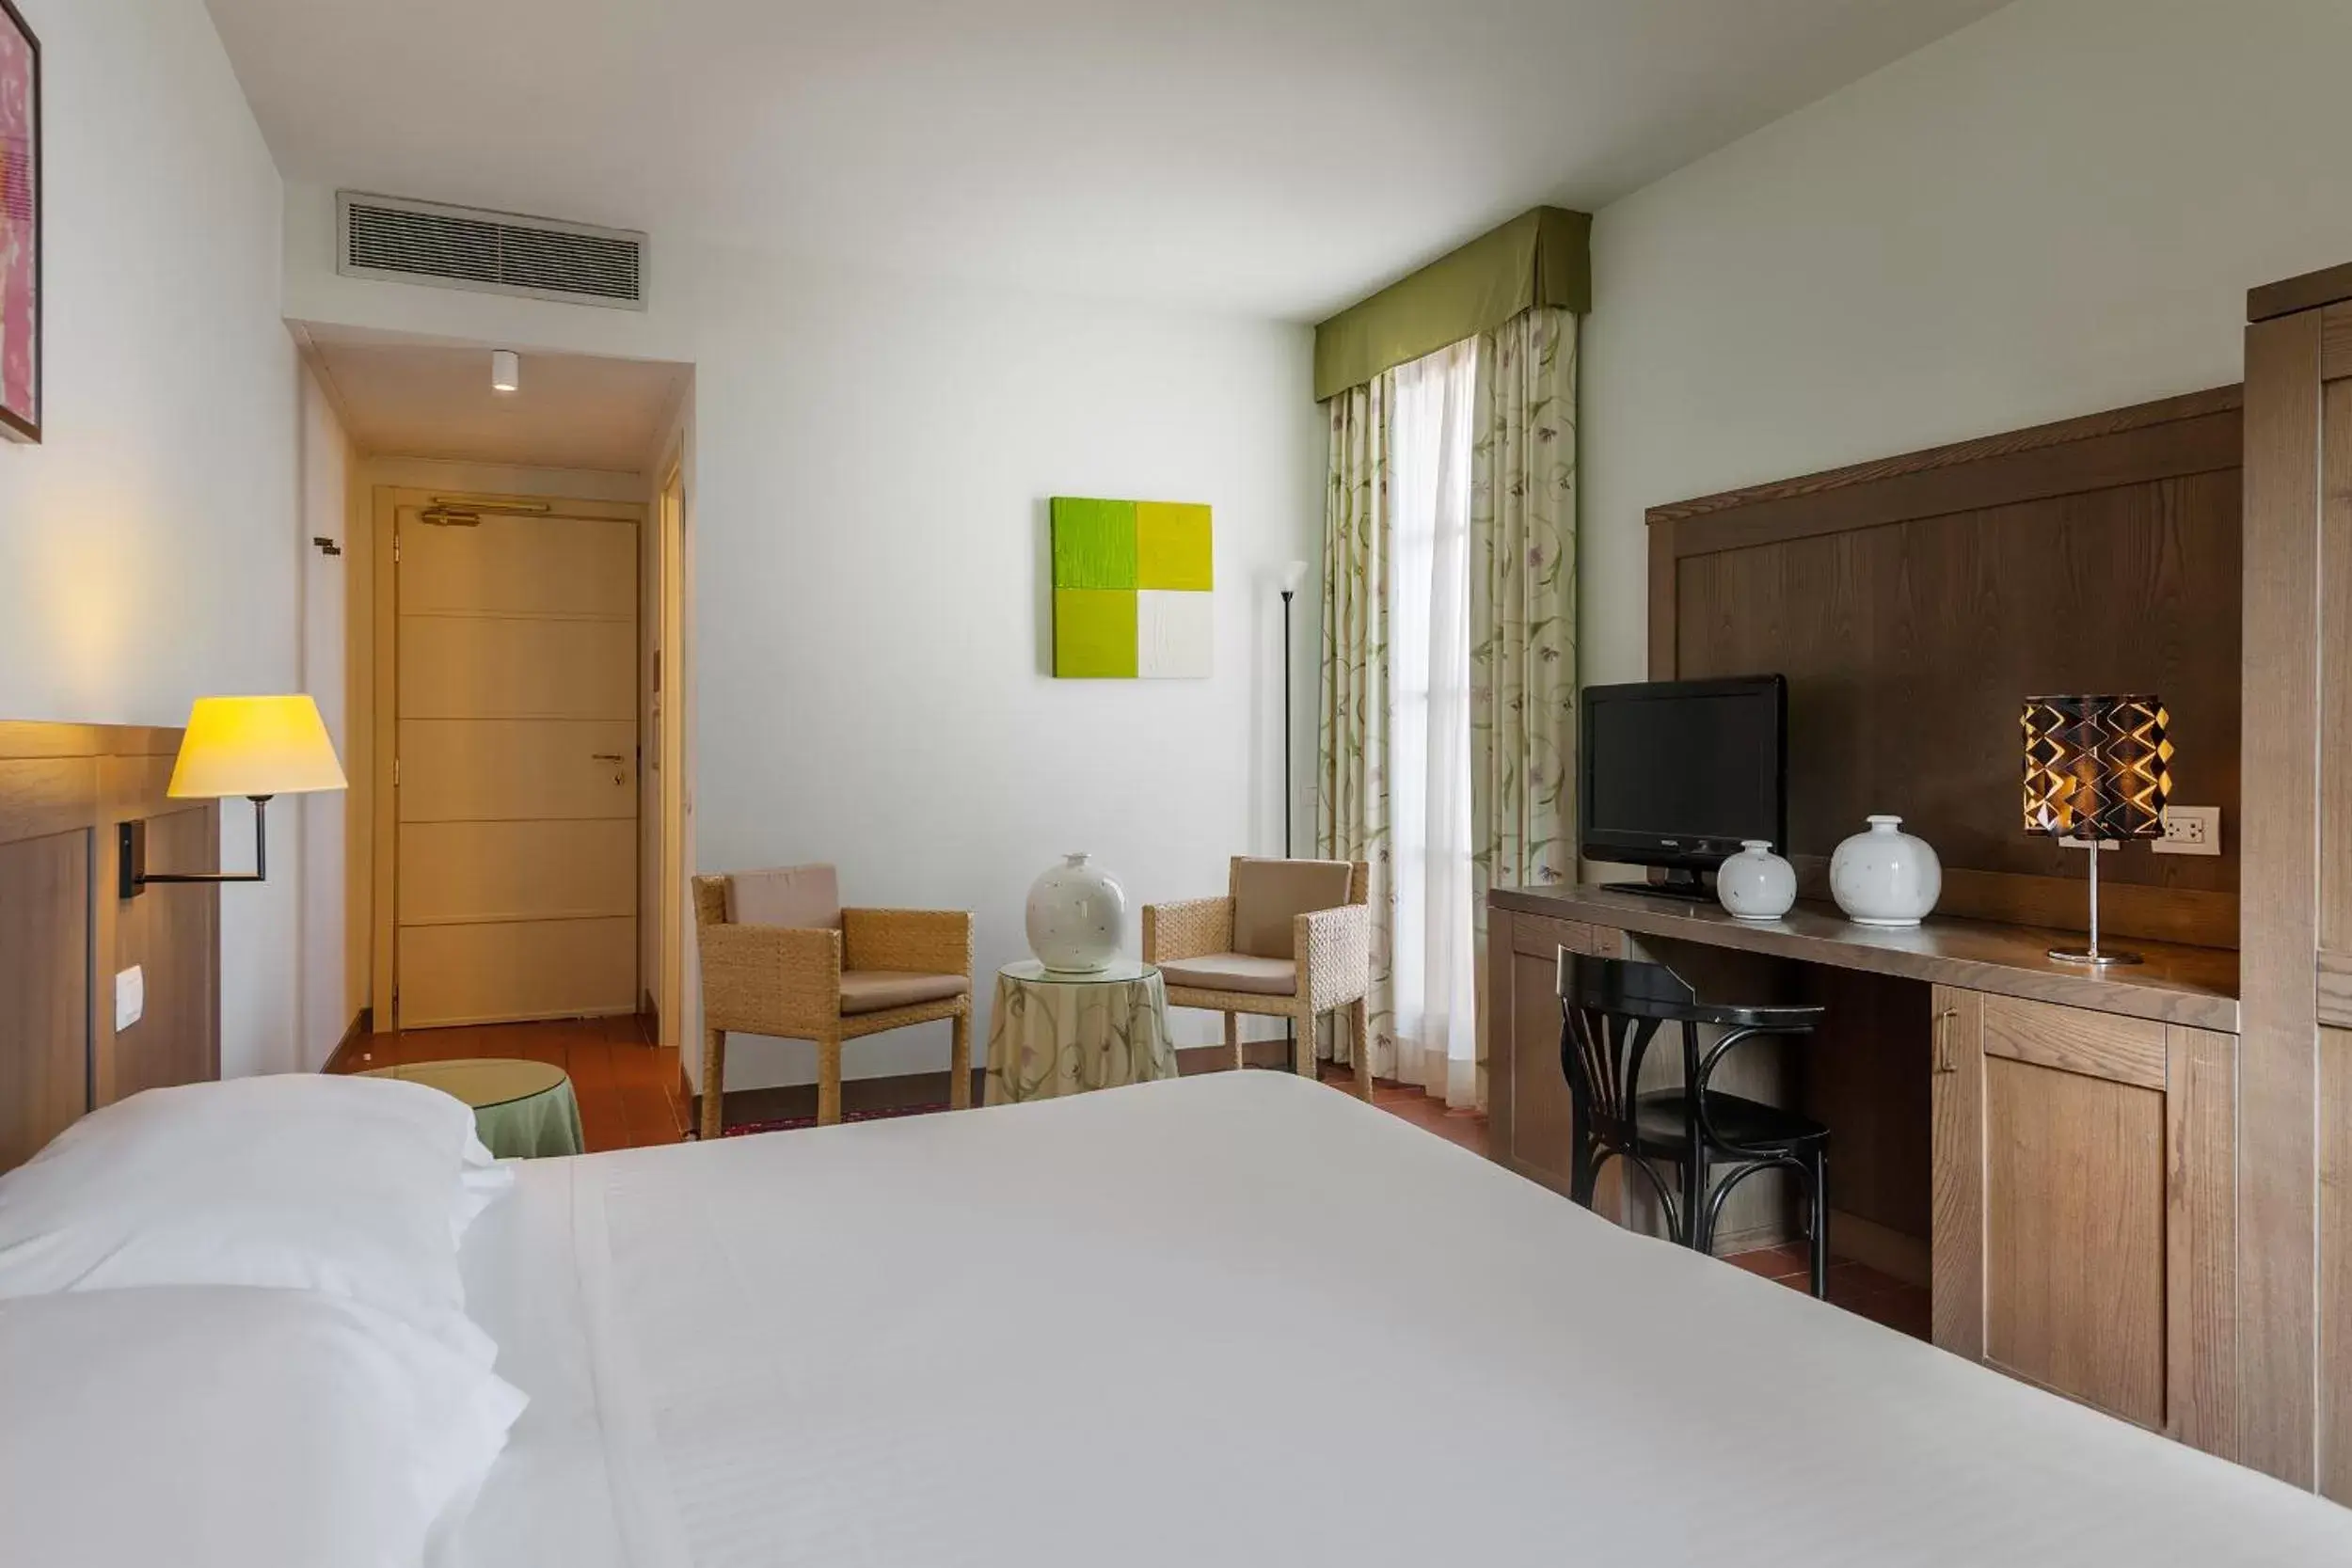 Day, Room Photo in Villasanpaolo Resort & Spa